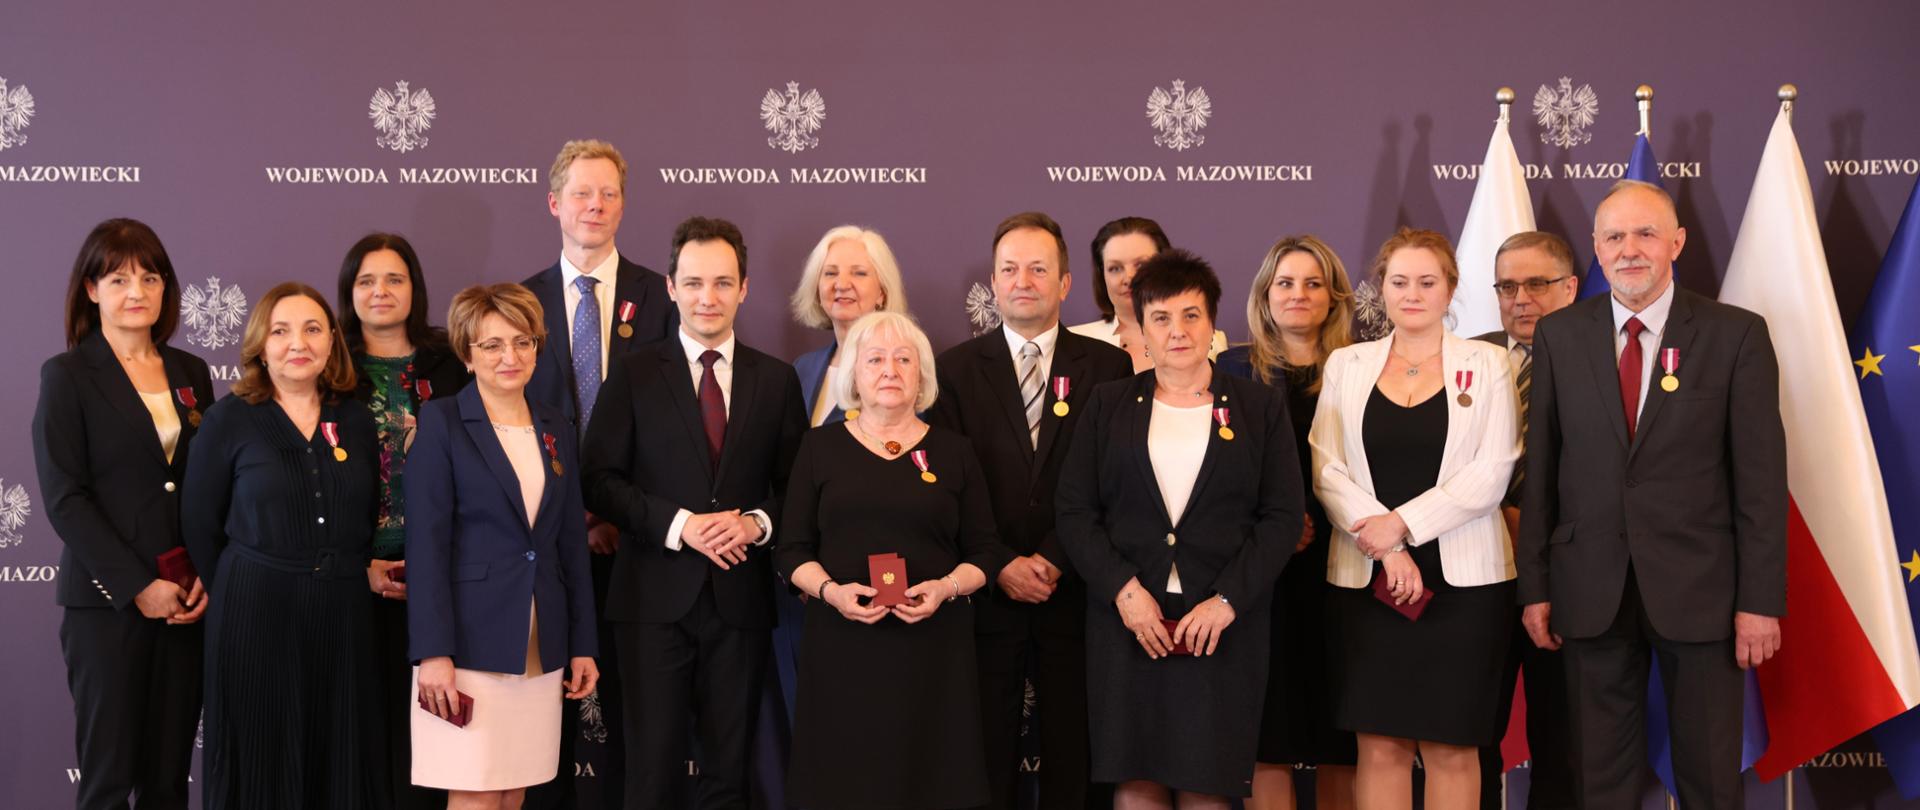 Na zdjęciu grupa ludzi odznaczonych medalami. Z boku stoi flaga Polski i Unii Europejskiej 